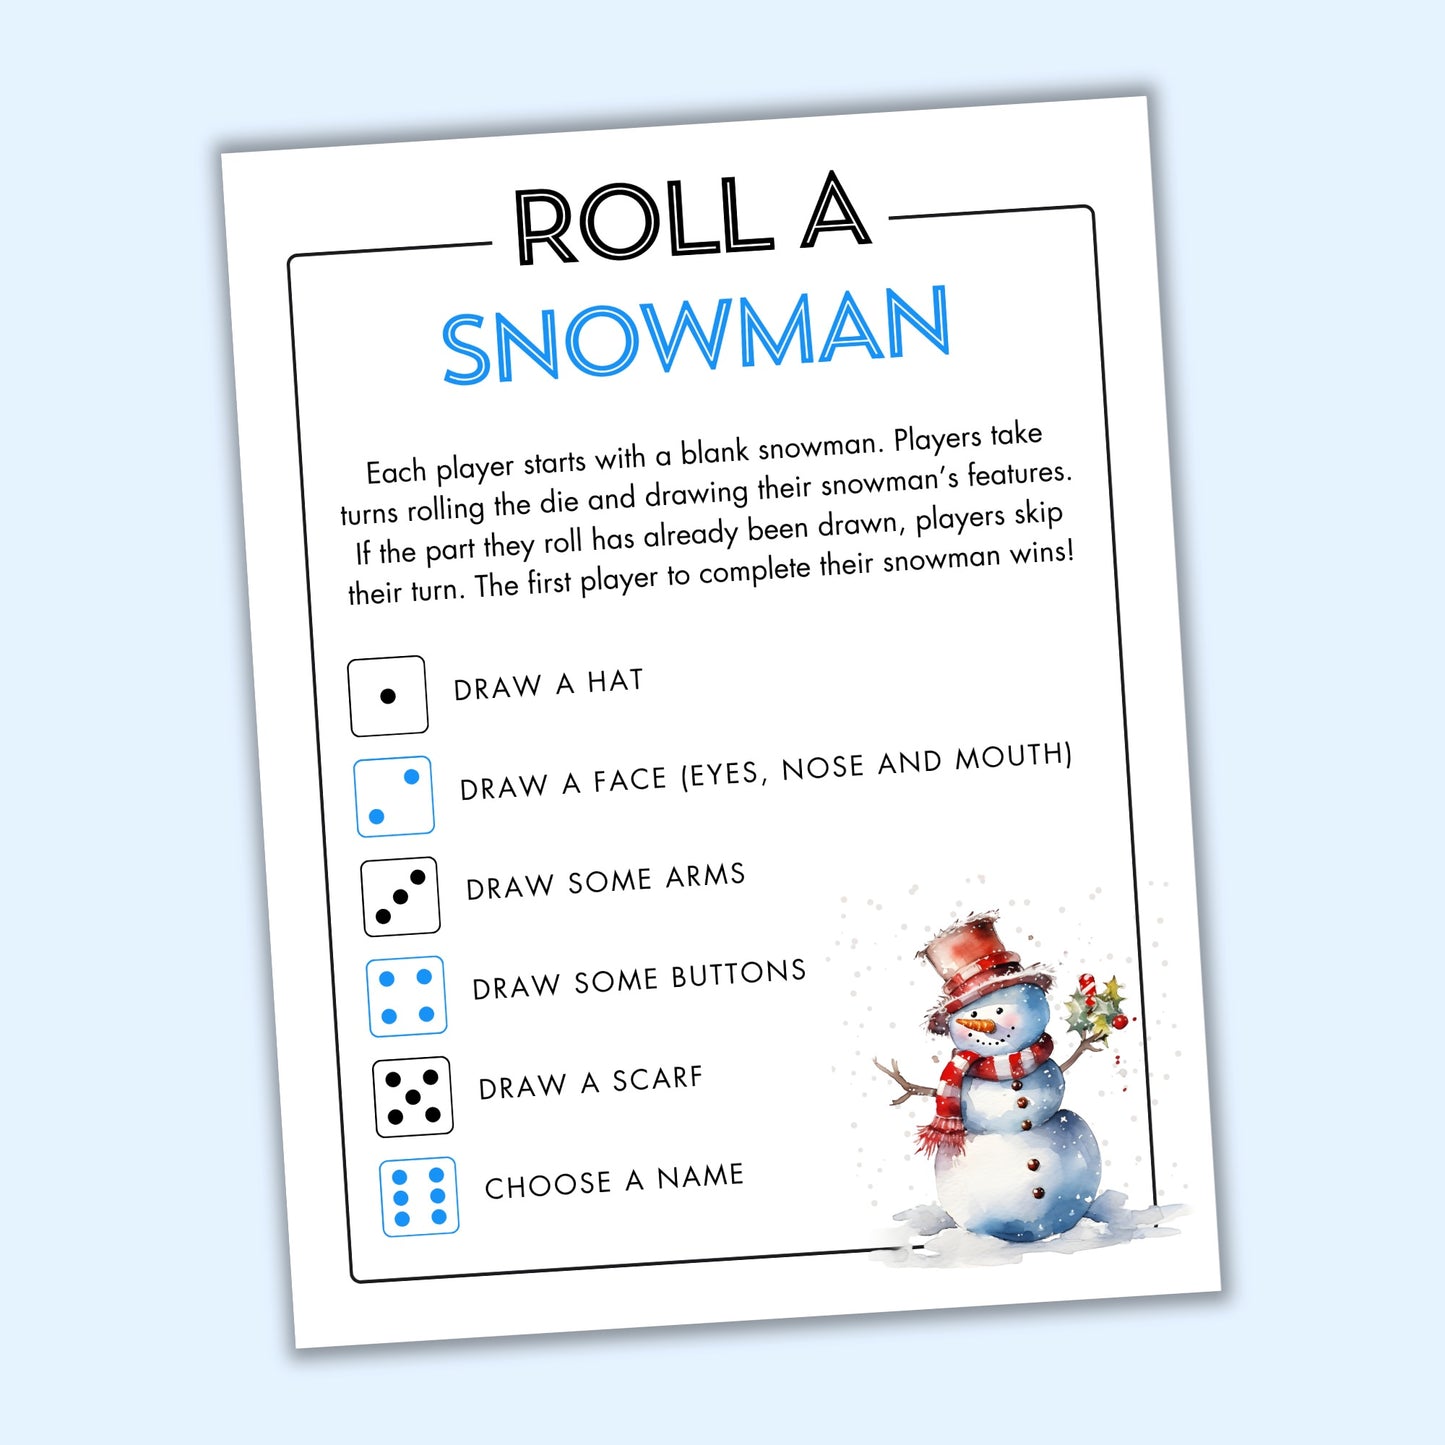 Roll a Snowman Game